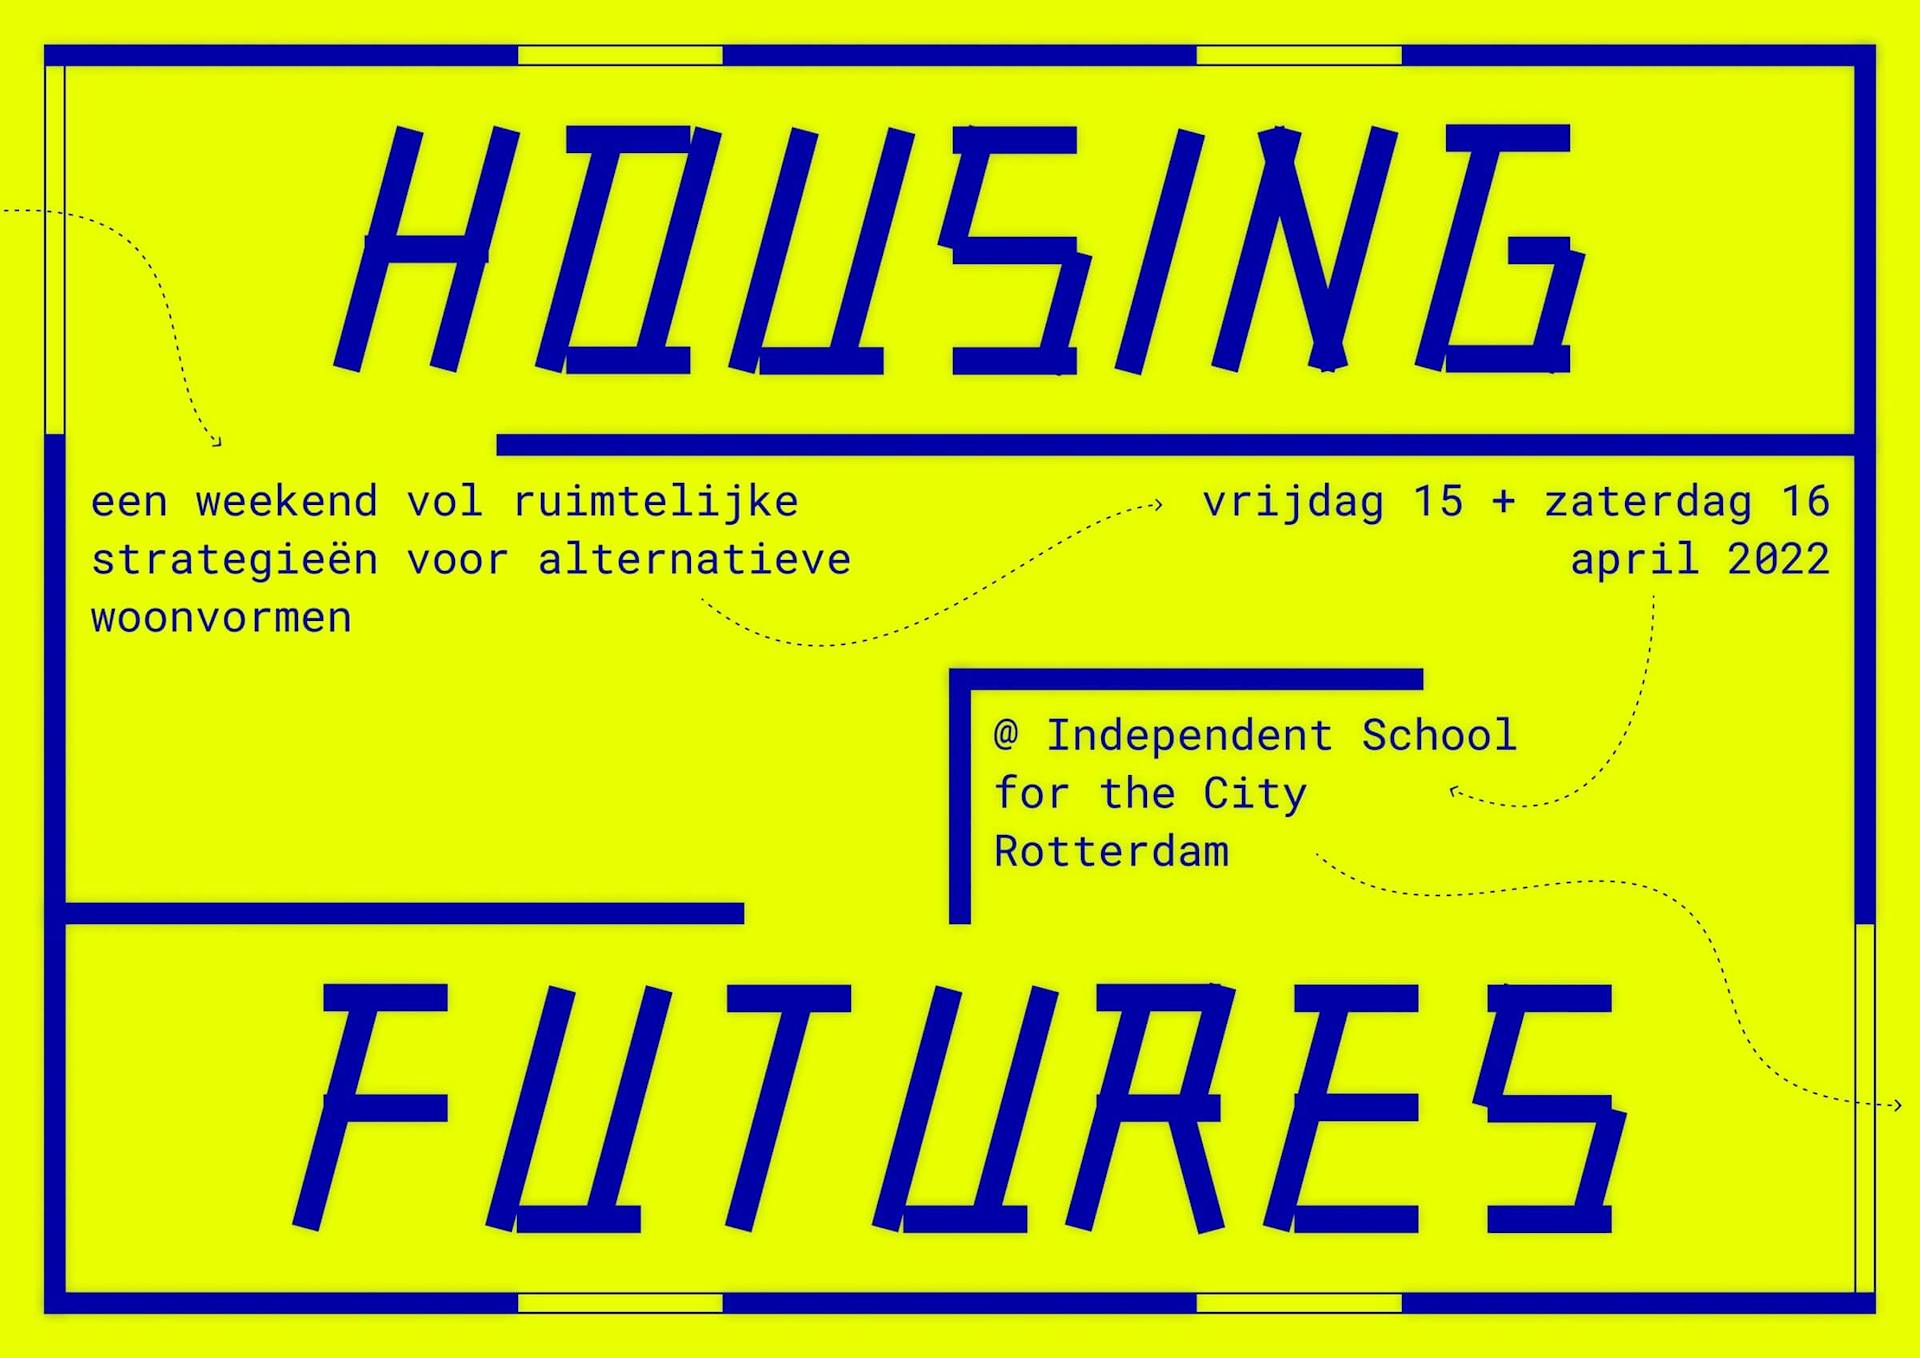 Housing Futures Visuals by Kirsten Spruit 